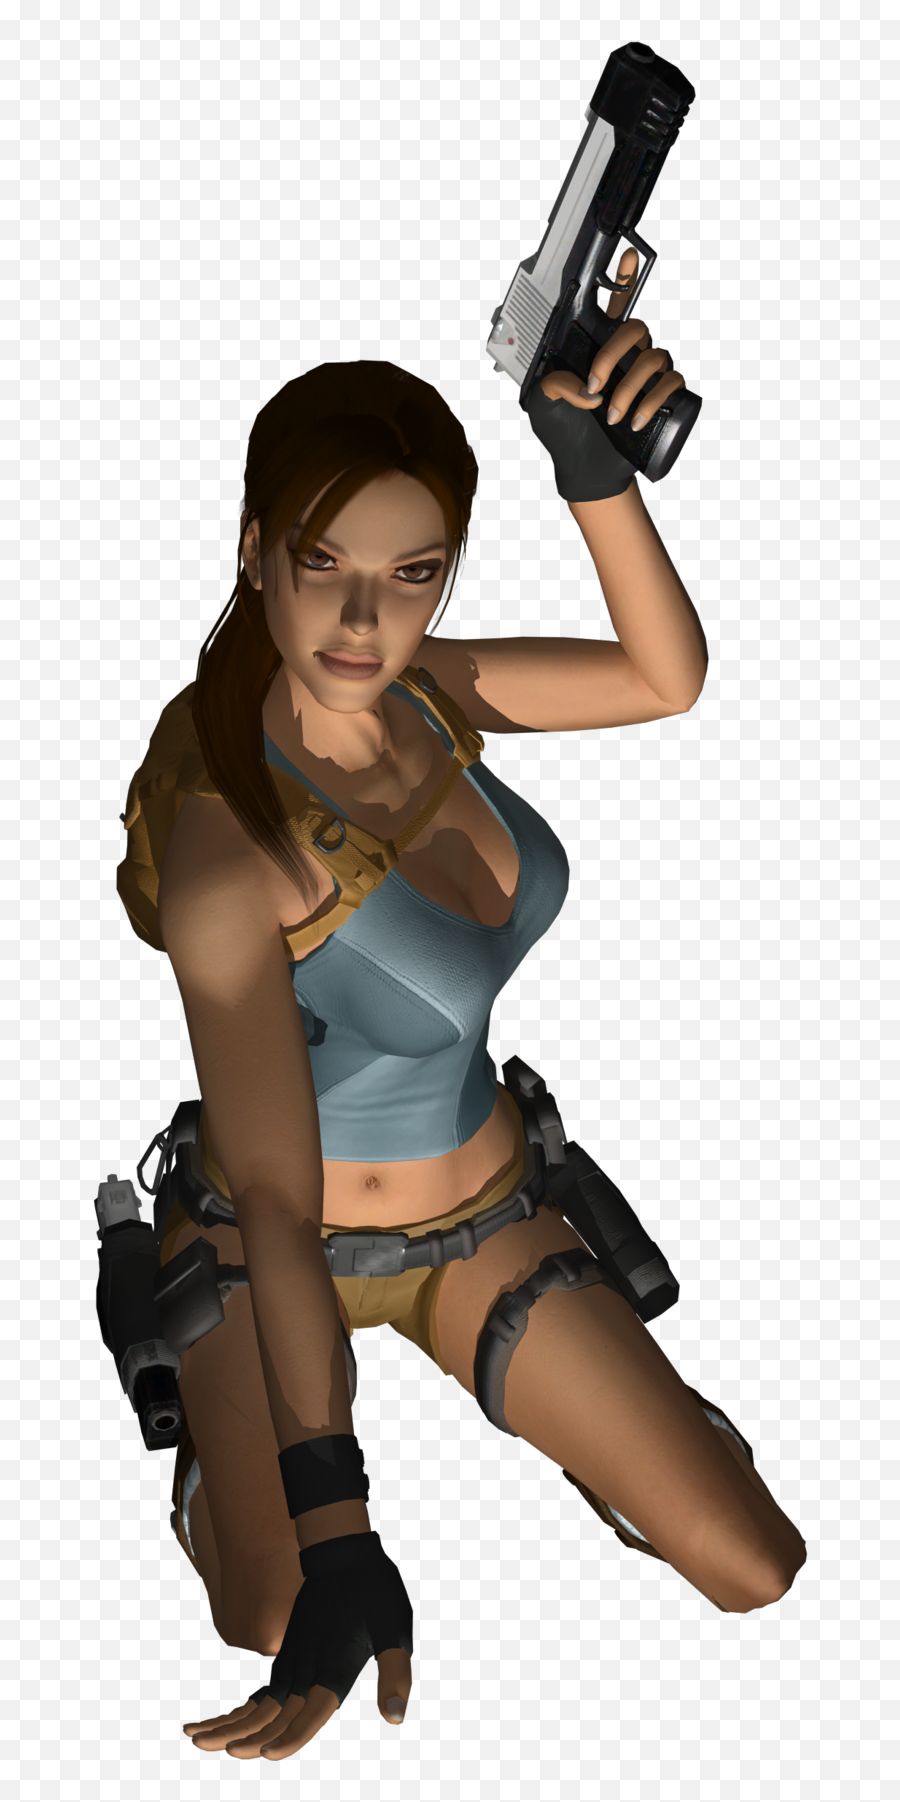 Download Lara Croft - Lara Croft Png,Lara Croft Transparent